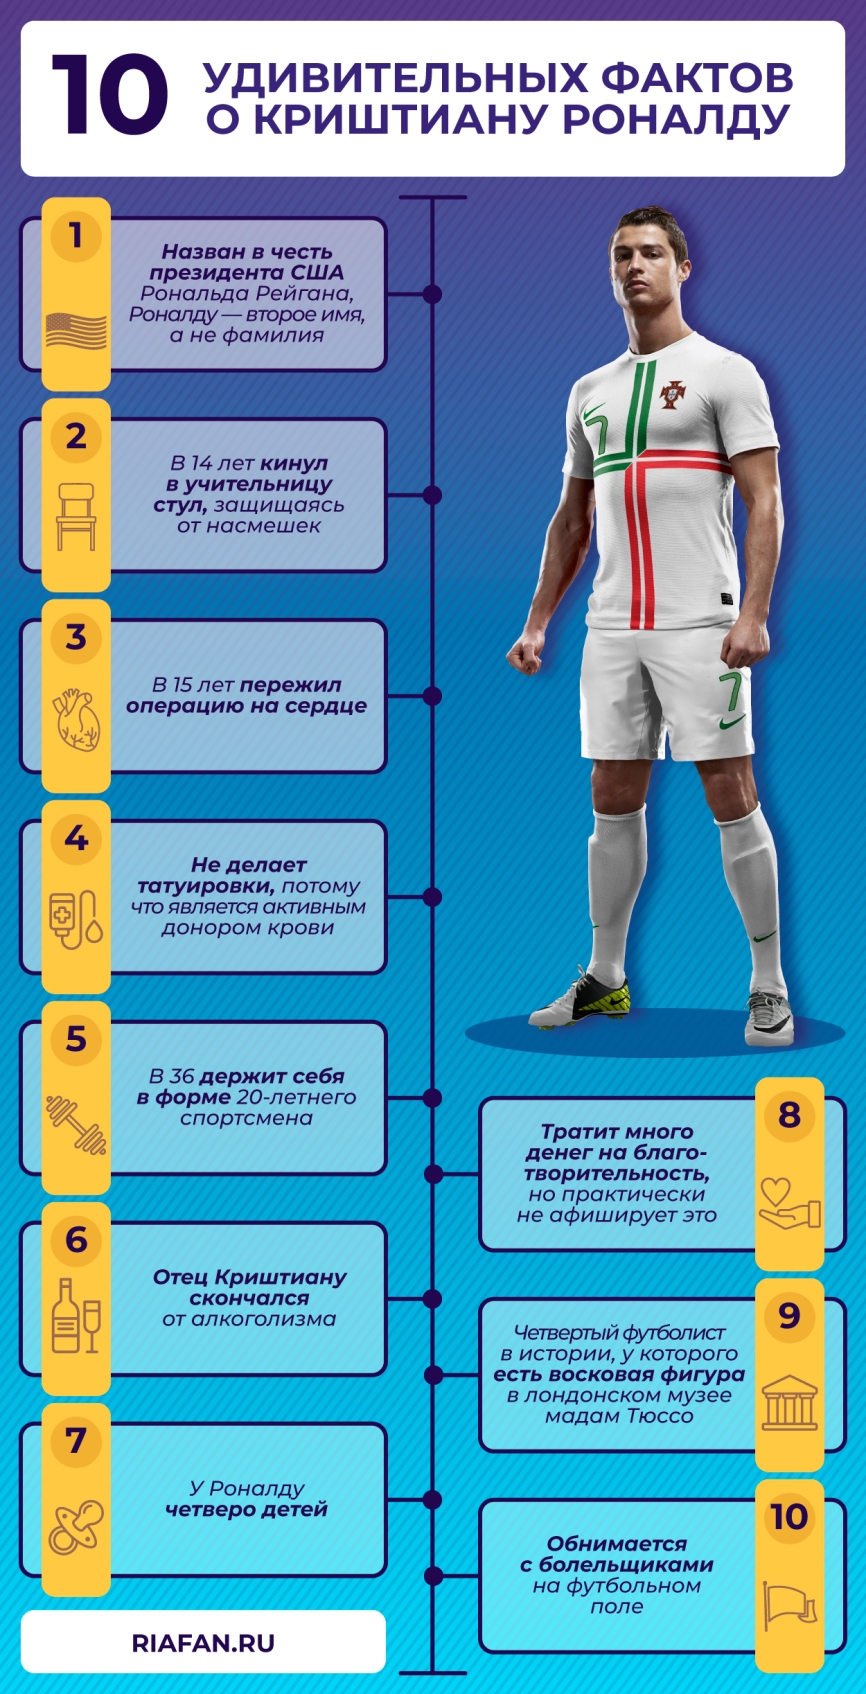 Какие рекорды побил Роналду и какие еще может побить на Евро-2020